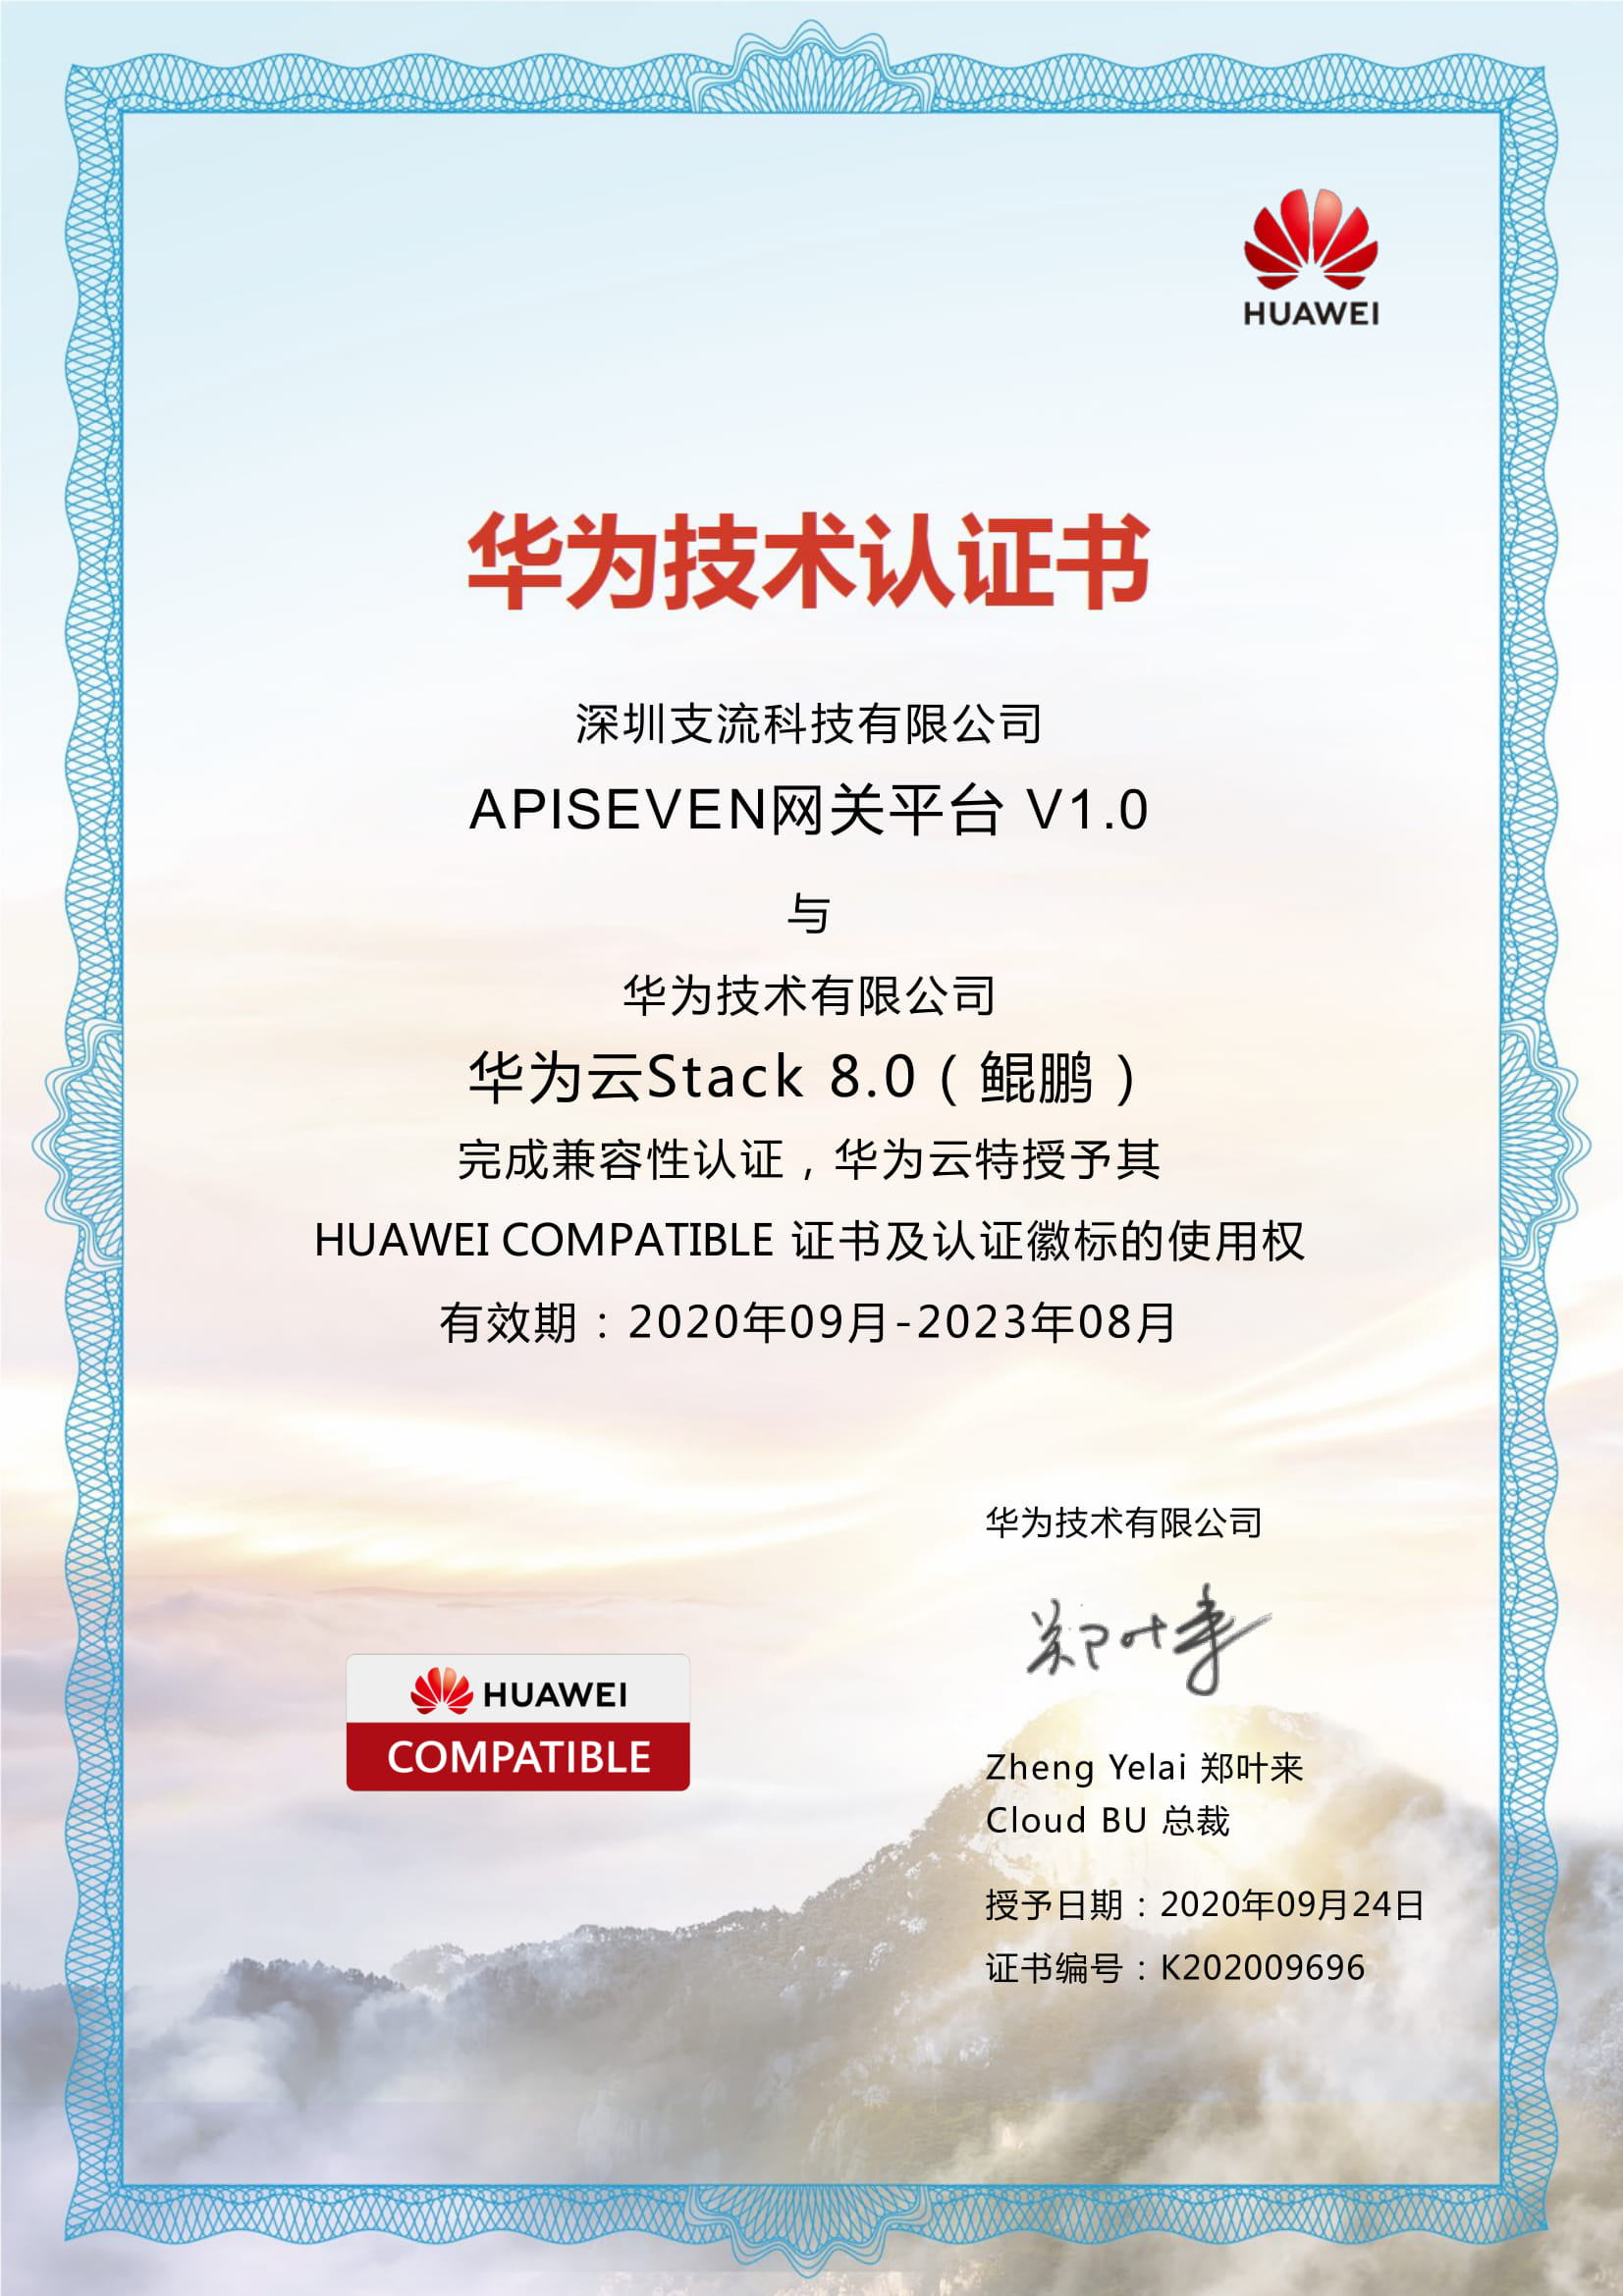 Huawei Stack 8.0